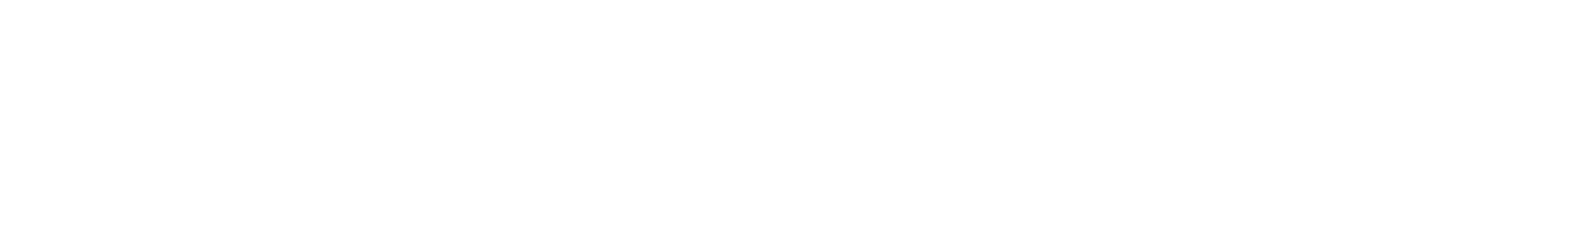 Kohl's
 logo large for dark backgrounds (transparent PNG)